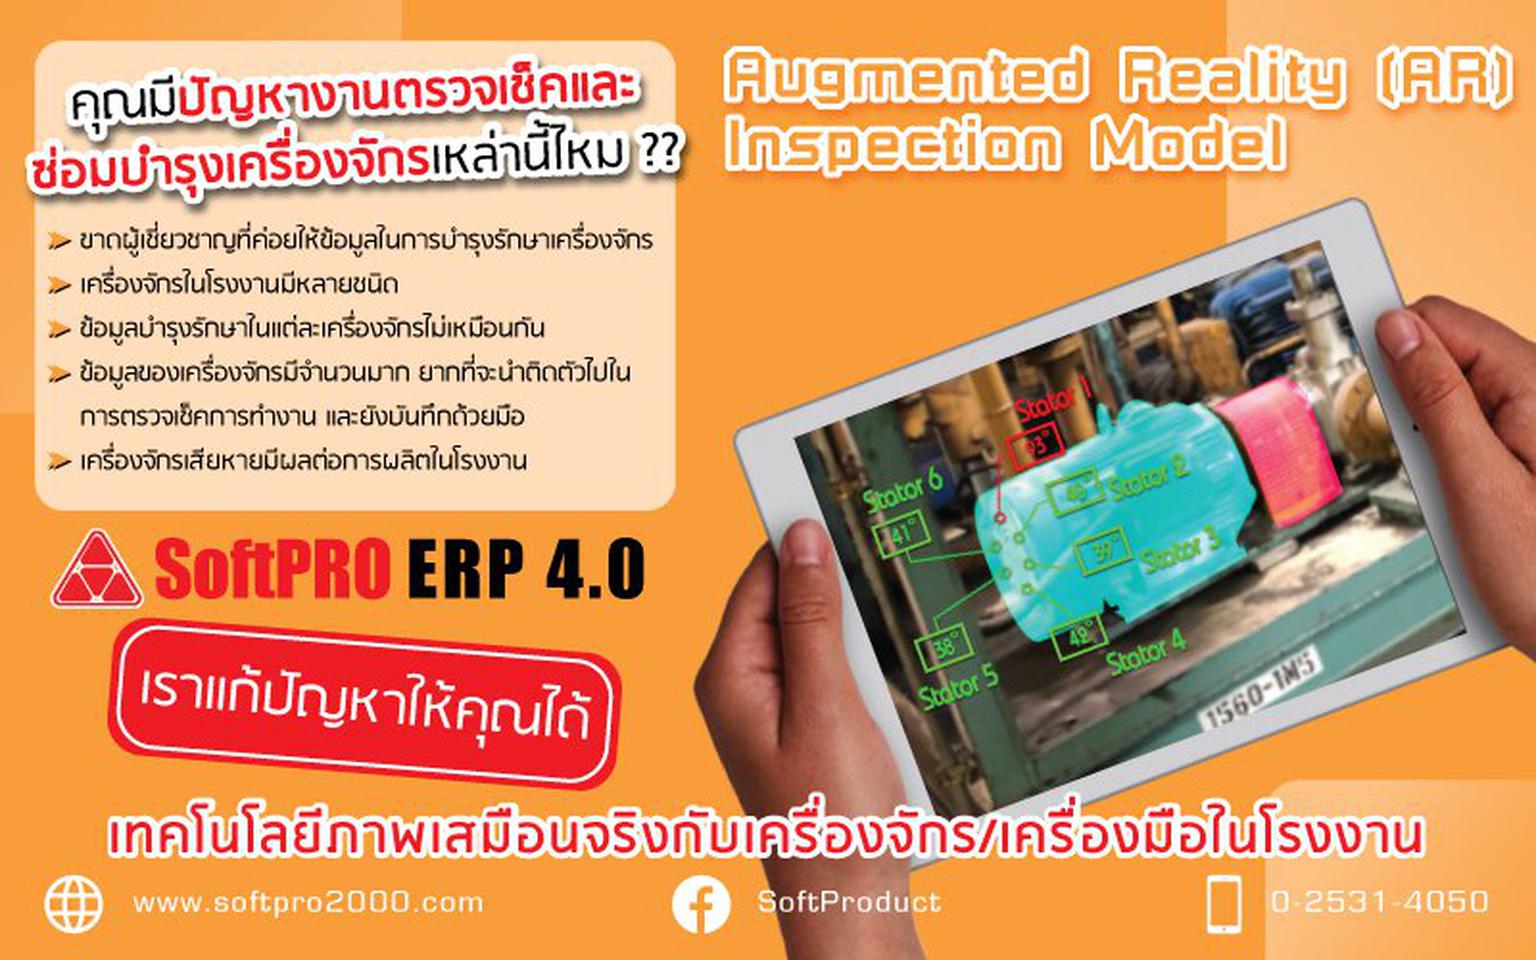 Augmented Reality (AR) Inspection Model เทคโนโลยีภาพเสมือนจริง รูปเล็กที่ 2